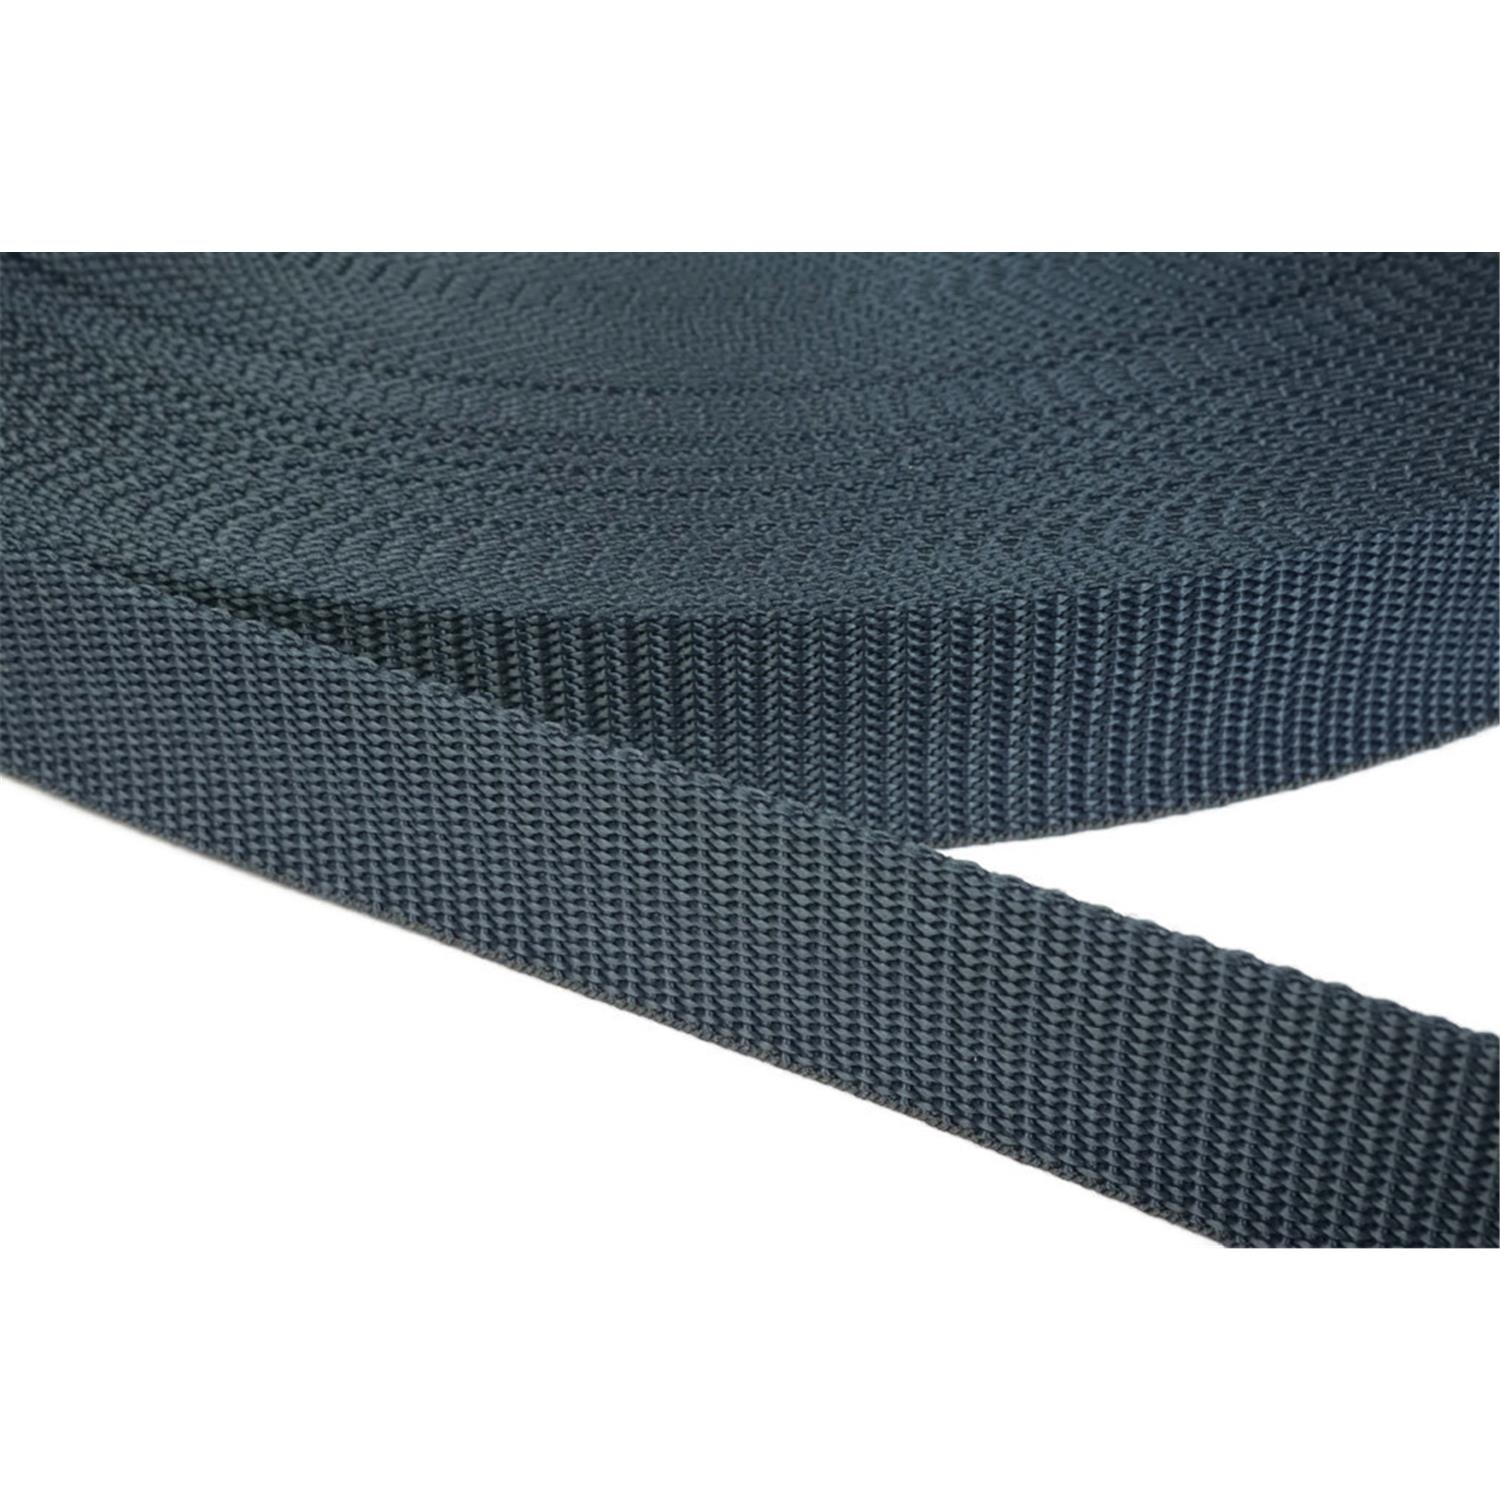 Gurtband 10mm breit aus Polypropylen in 41 Farben 40 - dunkelgrau/blau 12 Meter